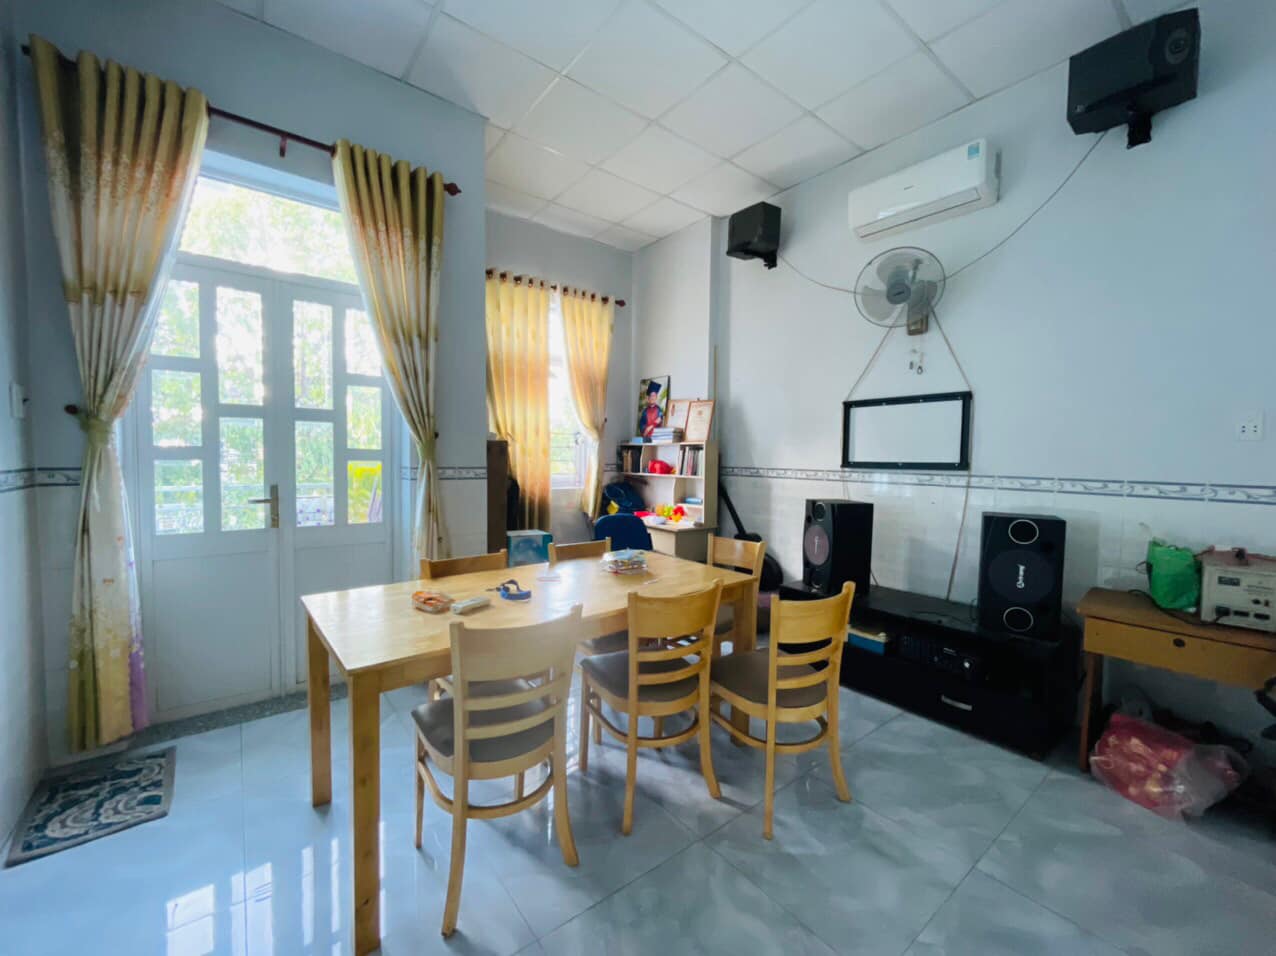 Bán nhà riêng thành phố Biên Hòa tỉnh Đồng Nai, giá 9,5 tỷ